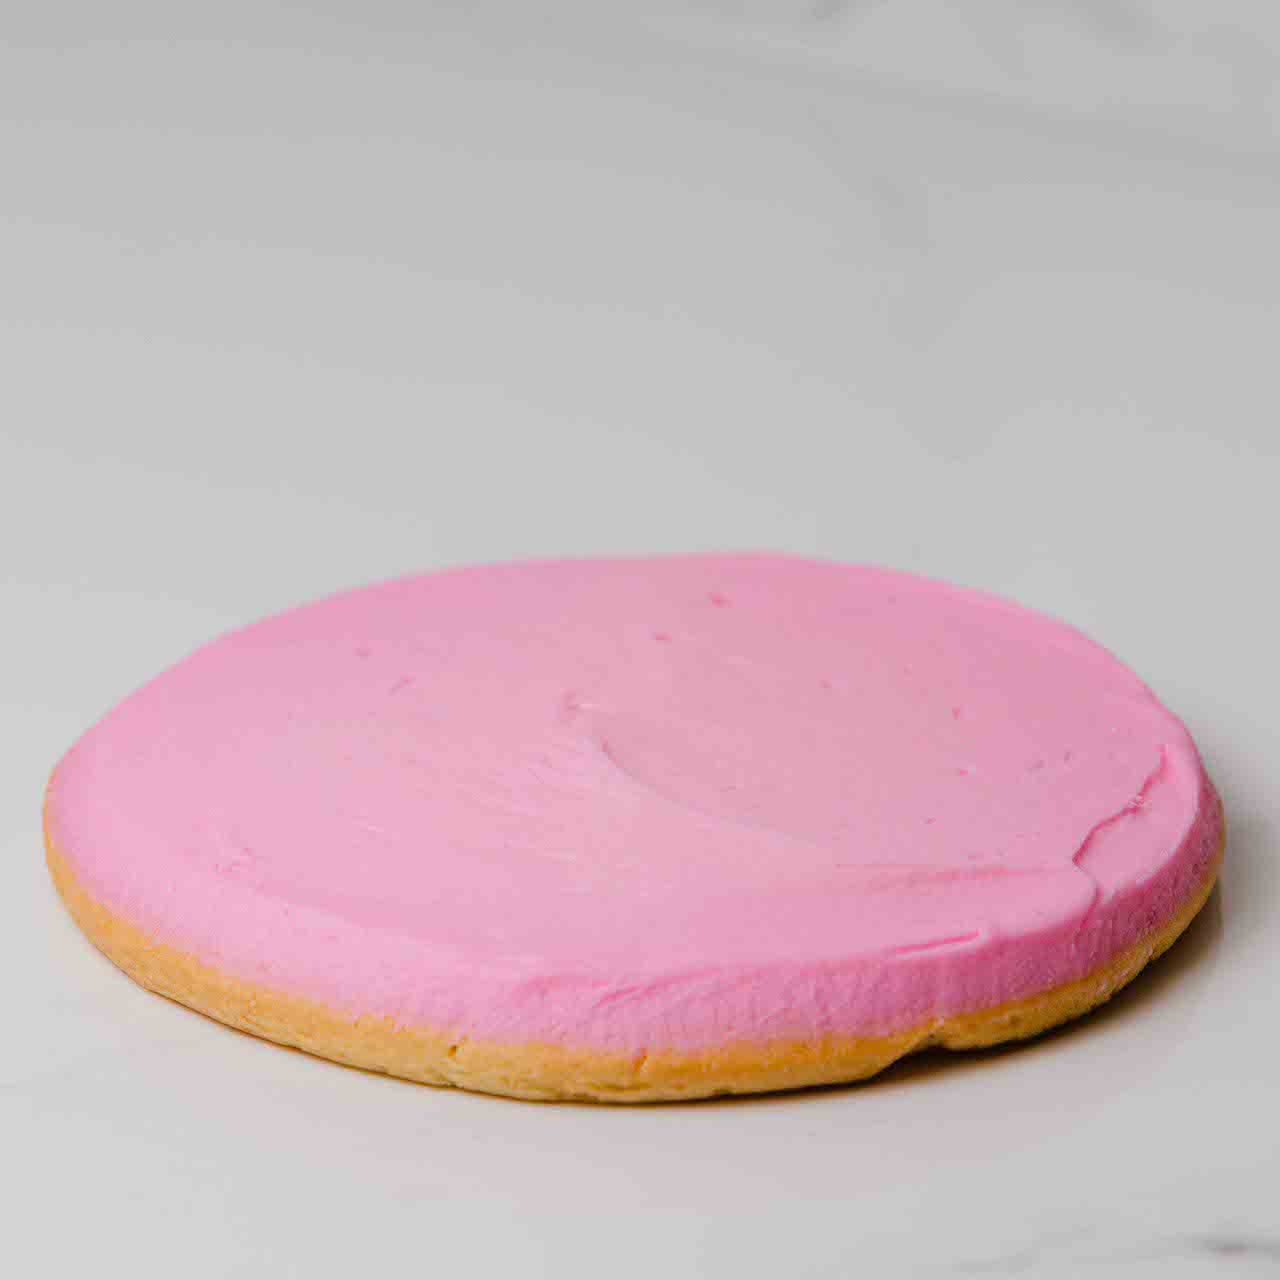 pink cookies sheetz｜TikTok Search